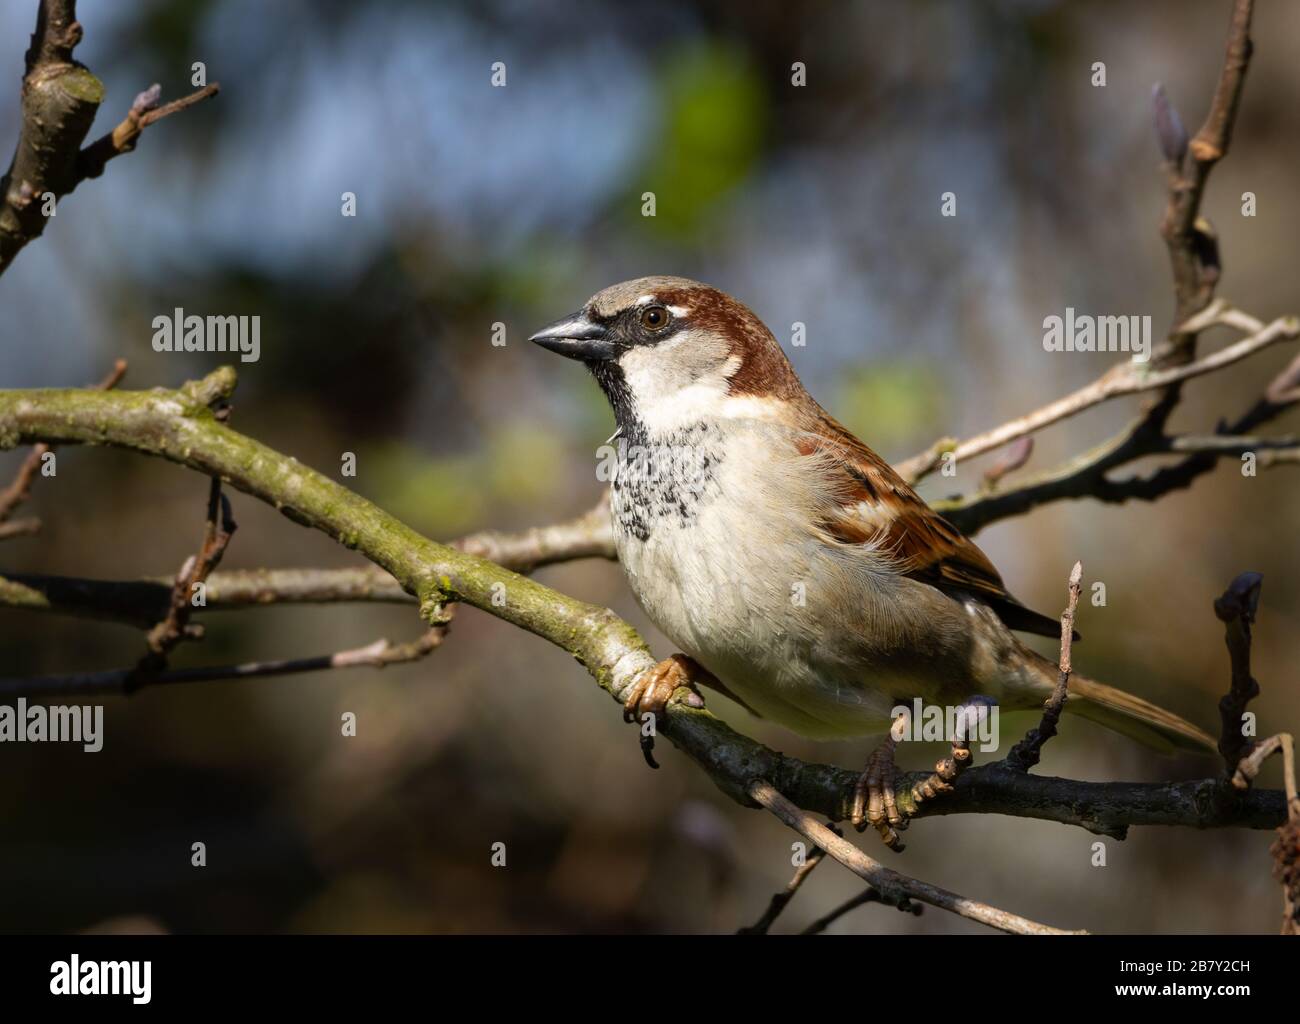 Portrait d'une maison masculine sparrow assise sur une branche d'arbre à la recherche de nourriture. Gros plan. Banque D'Images